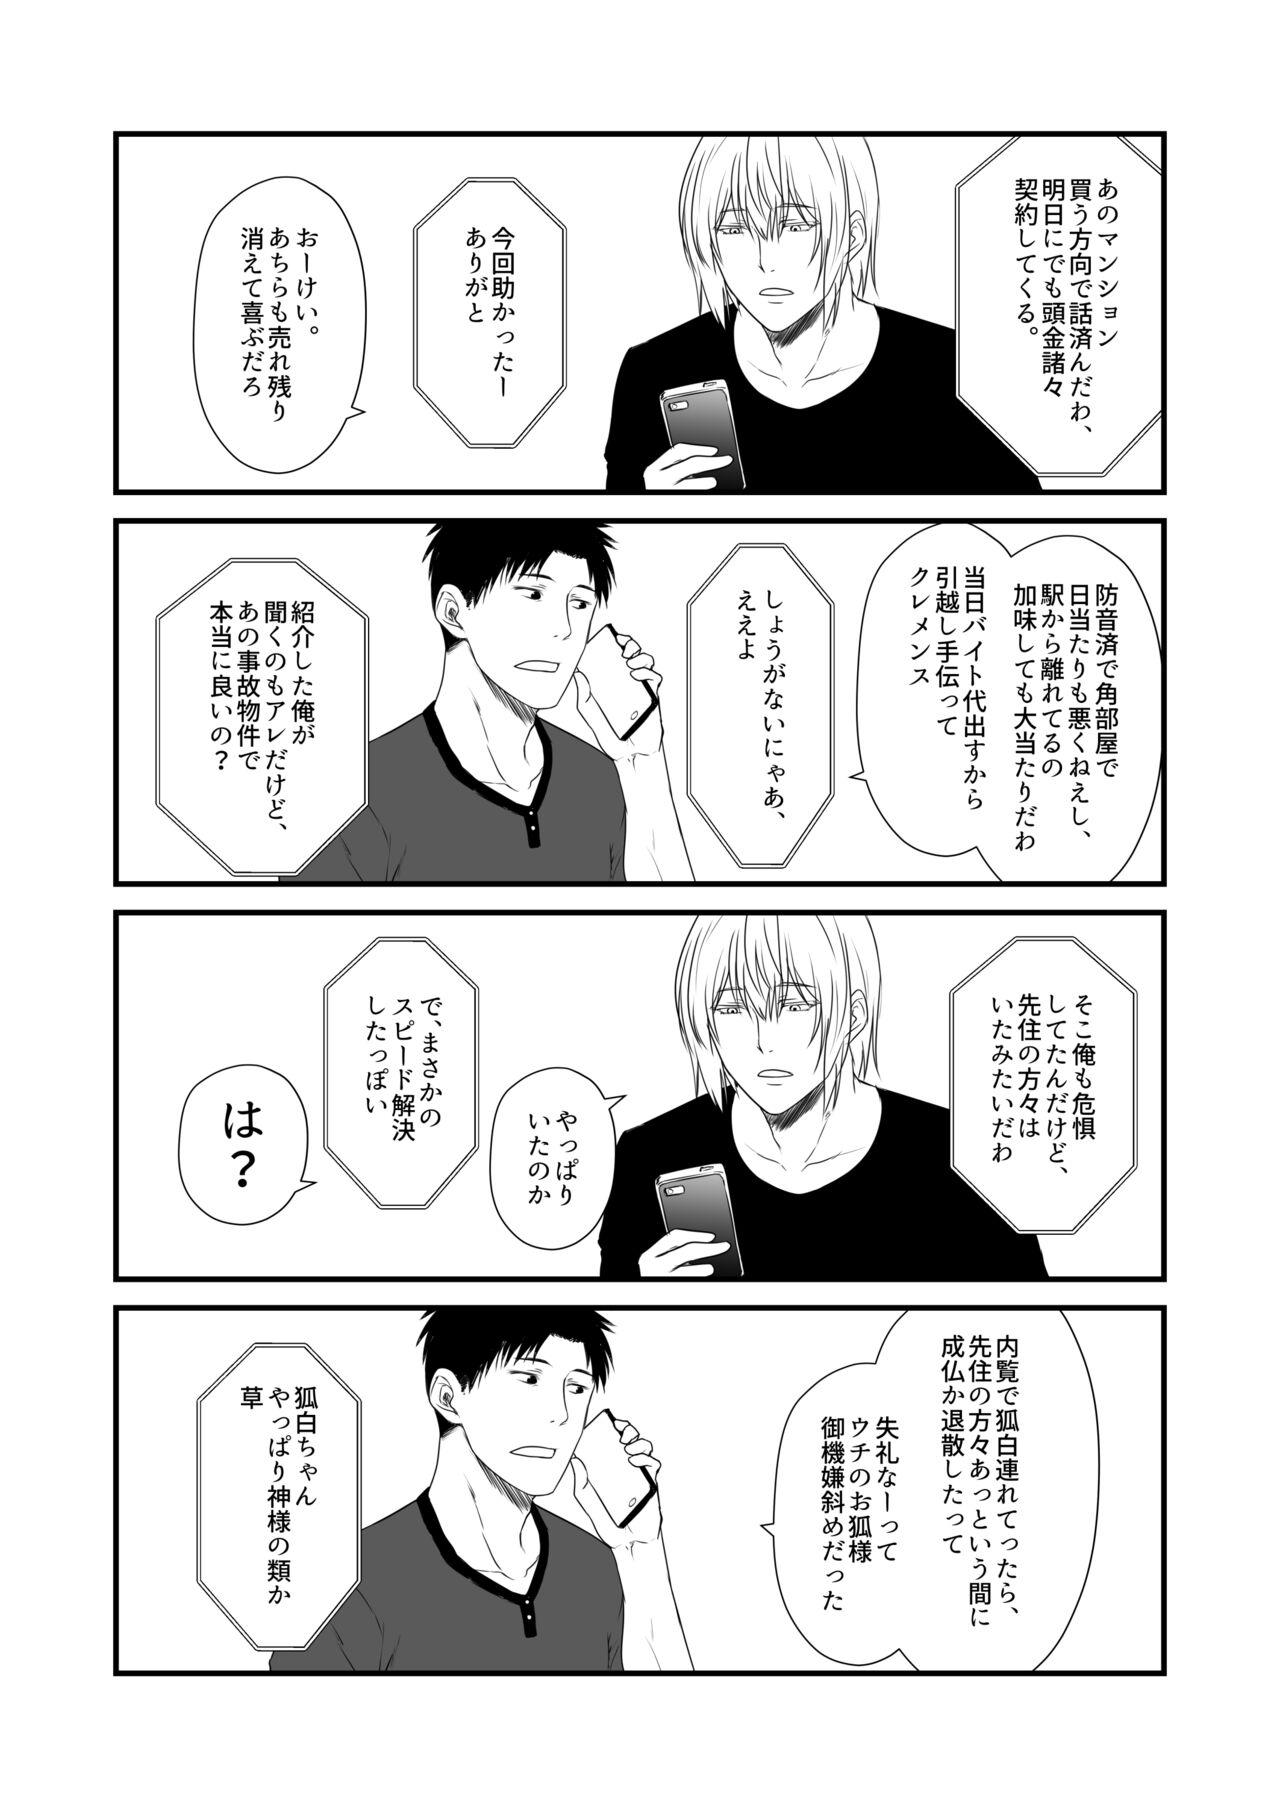 No Condom Kohaku Biyori Vol. 8 - Original Sharing - Page 12